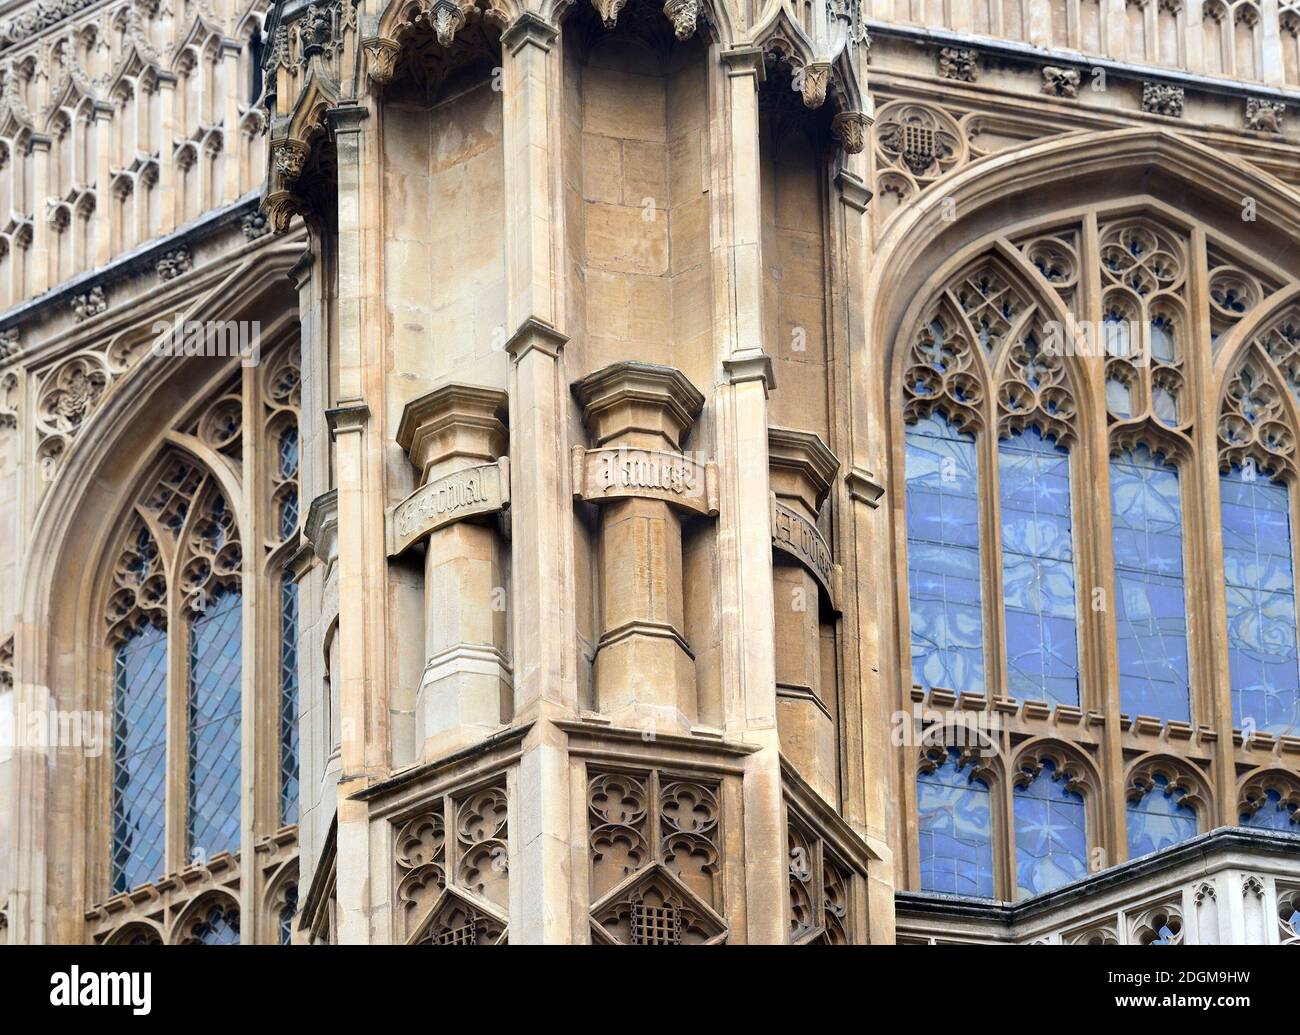 Londra, Inghilterra, Regno Unito. Abbazia di Westminster: Dettaglio dell'esterno della Cappella di Enrico VII. Plinti vuoti originariamente abitati da statue, che dal 1700.. Foto Stock